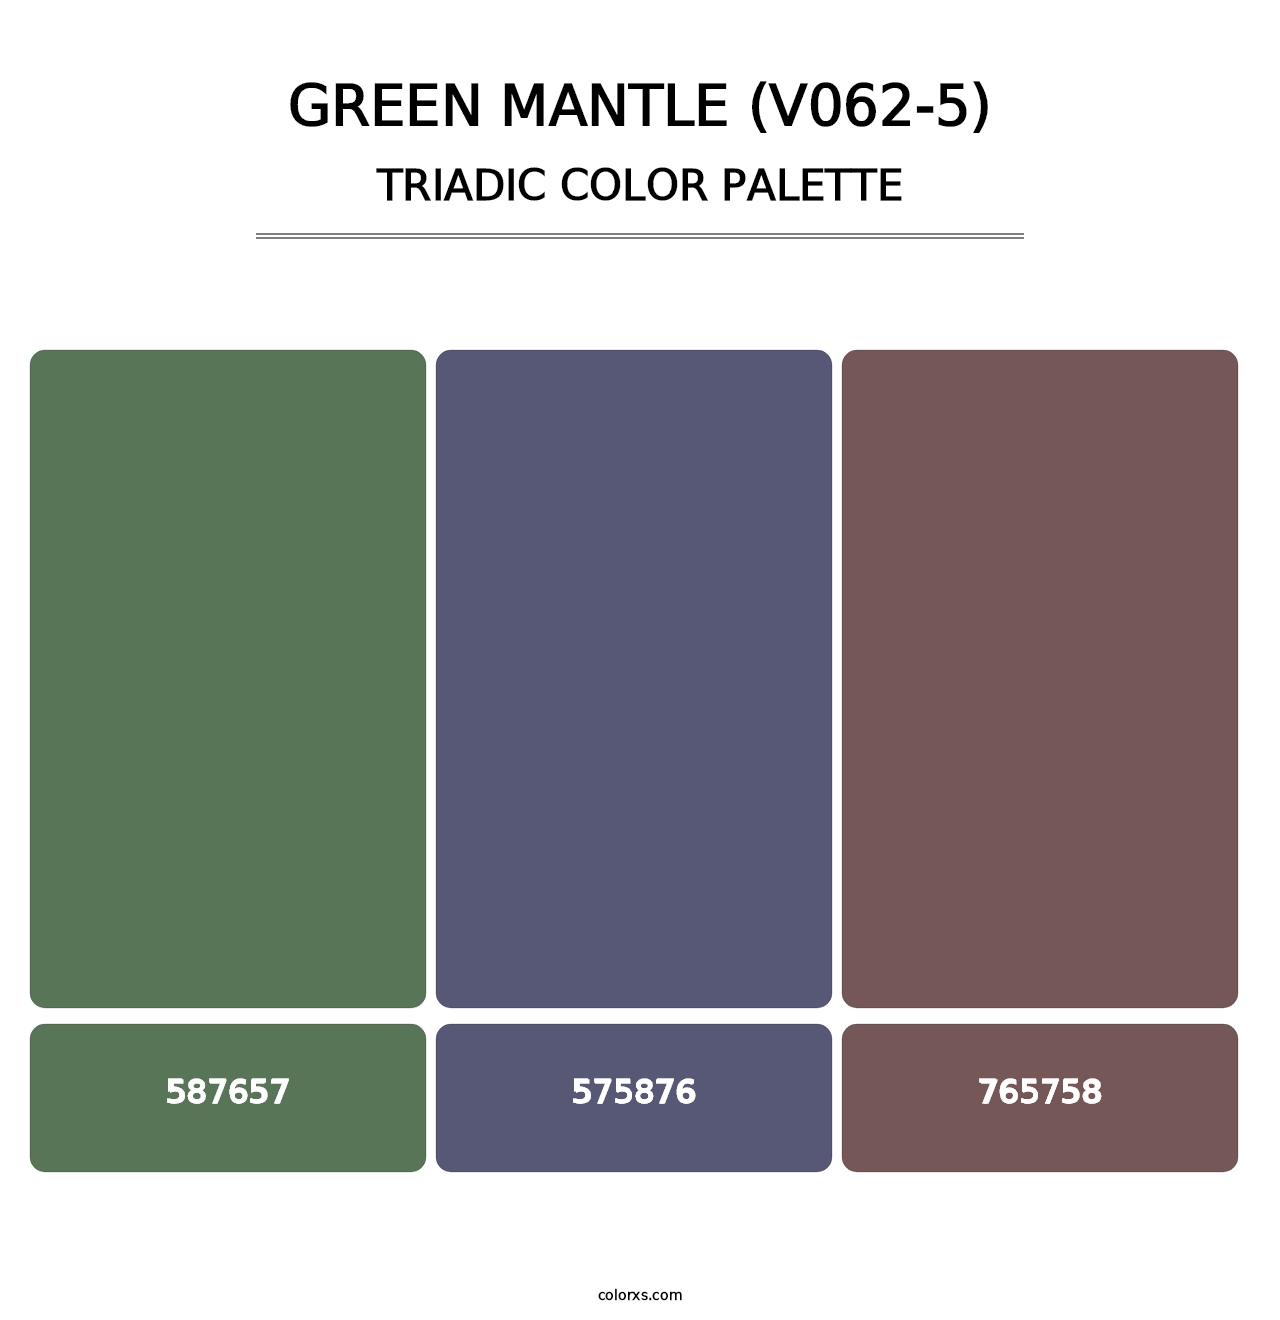 Green Mantle (V062-5) - Triadic Color Palette